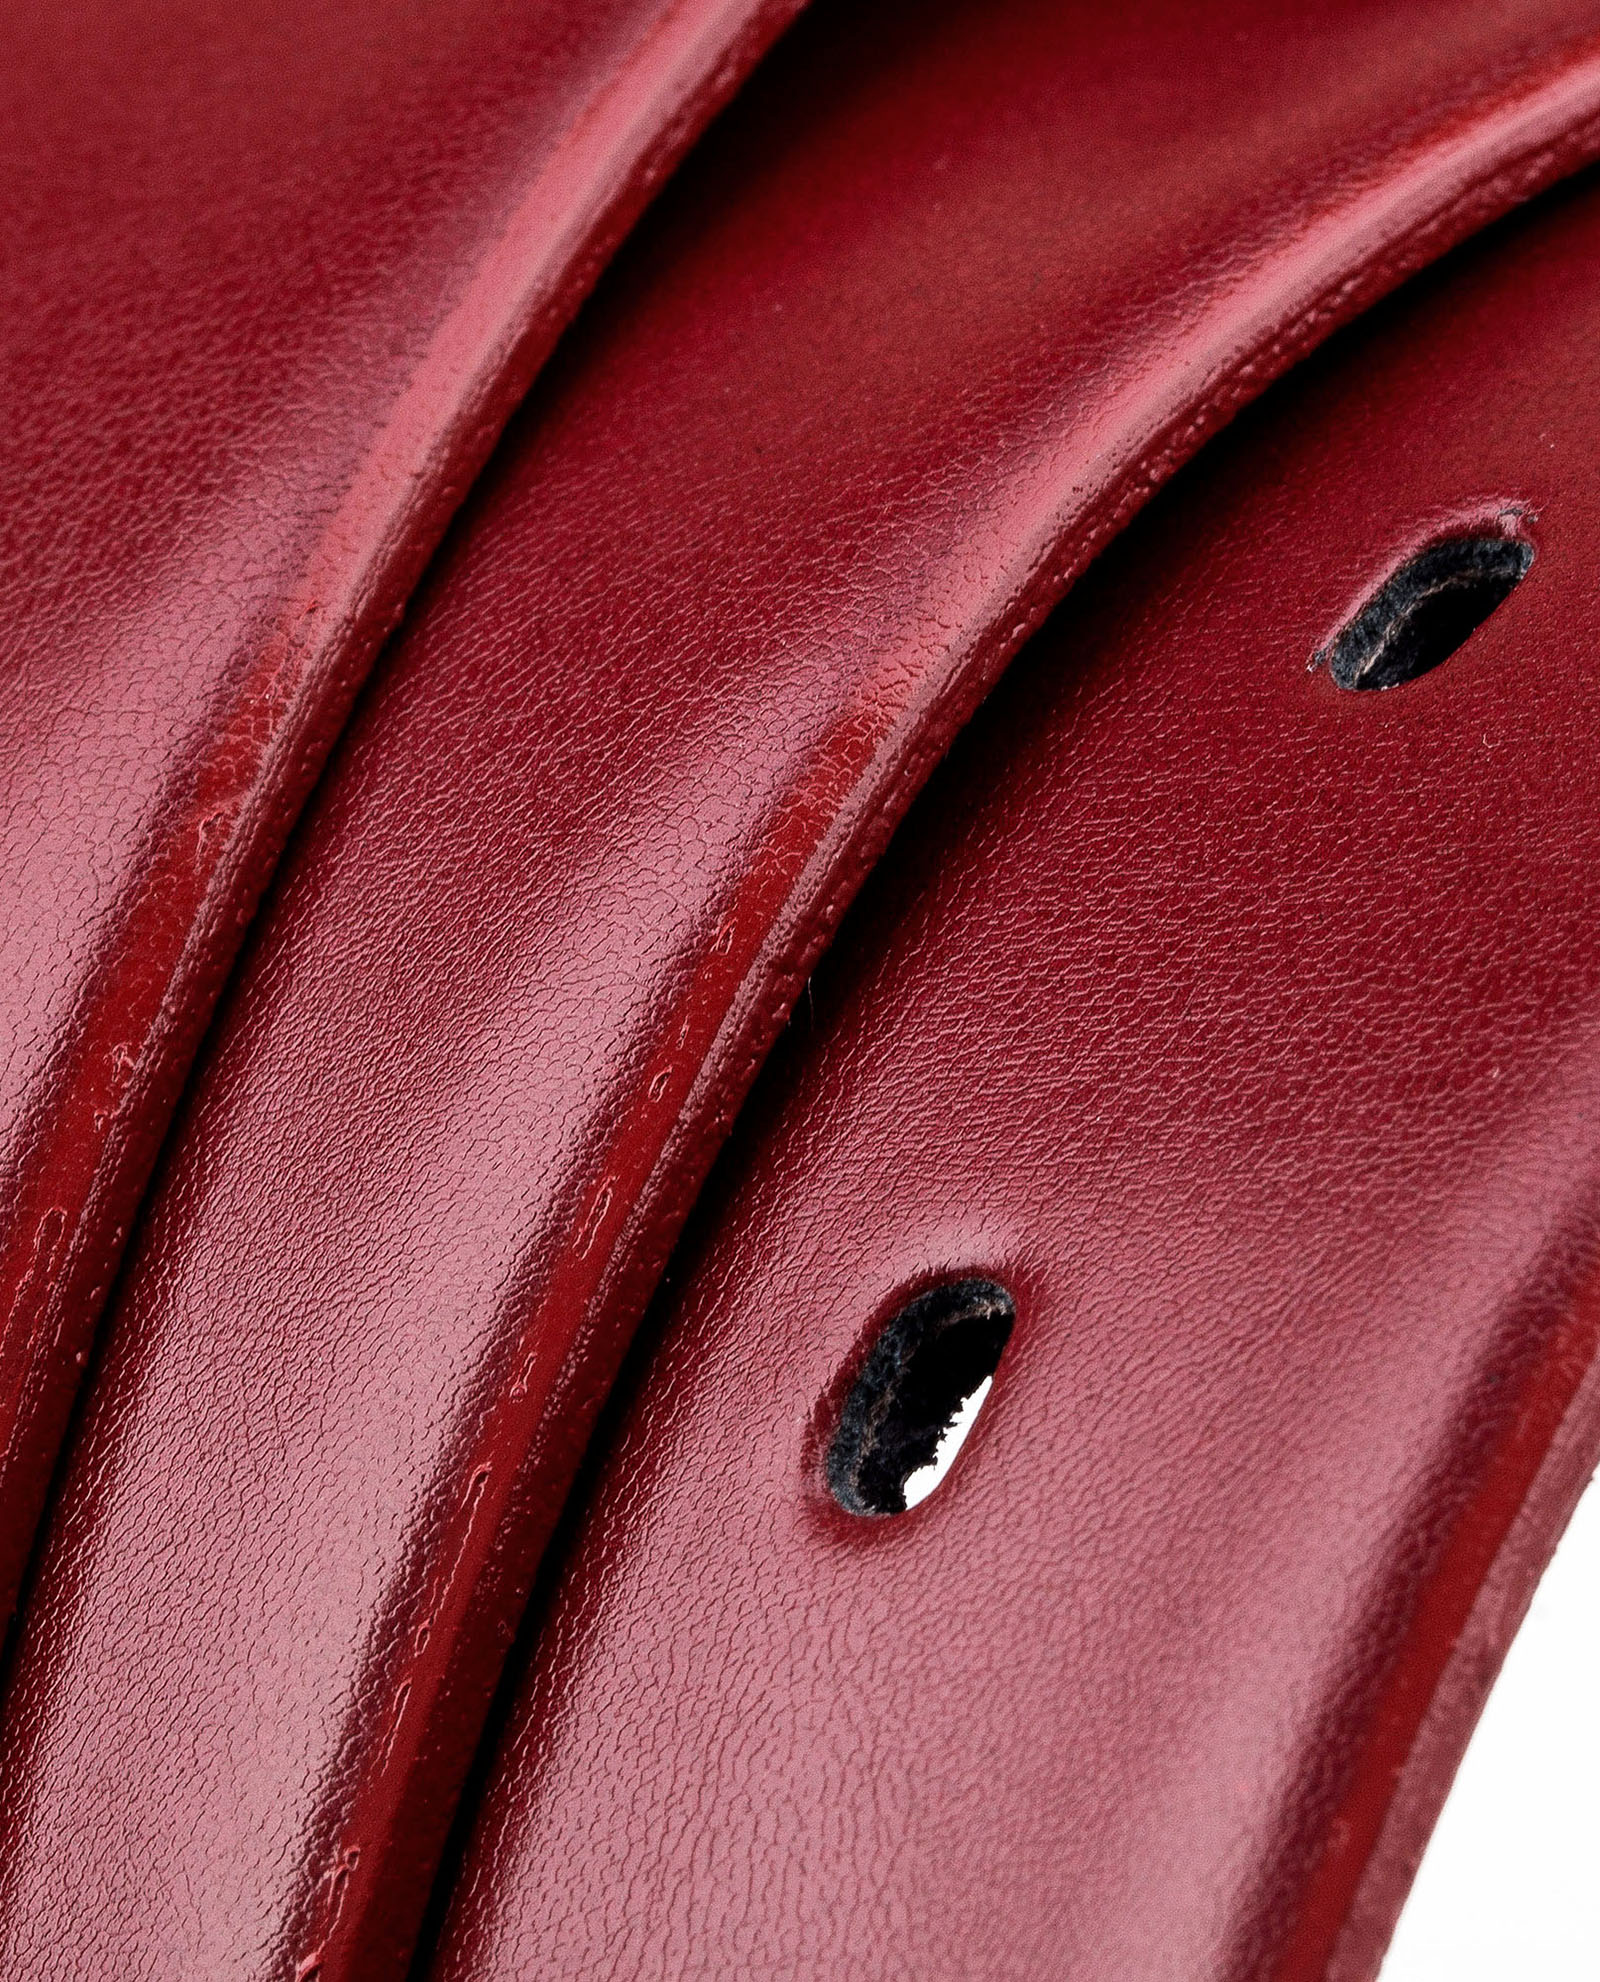 Buy Ruby Women's Red Leather Belt - LeatherBeltsOnline.com - Free Ship